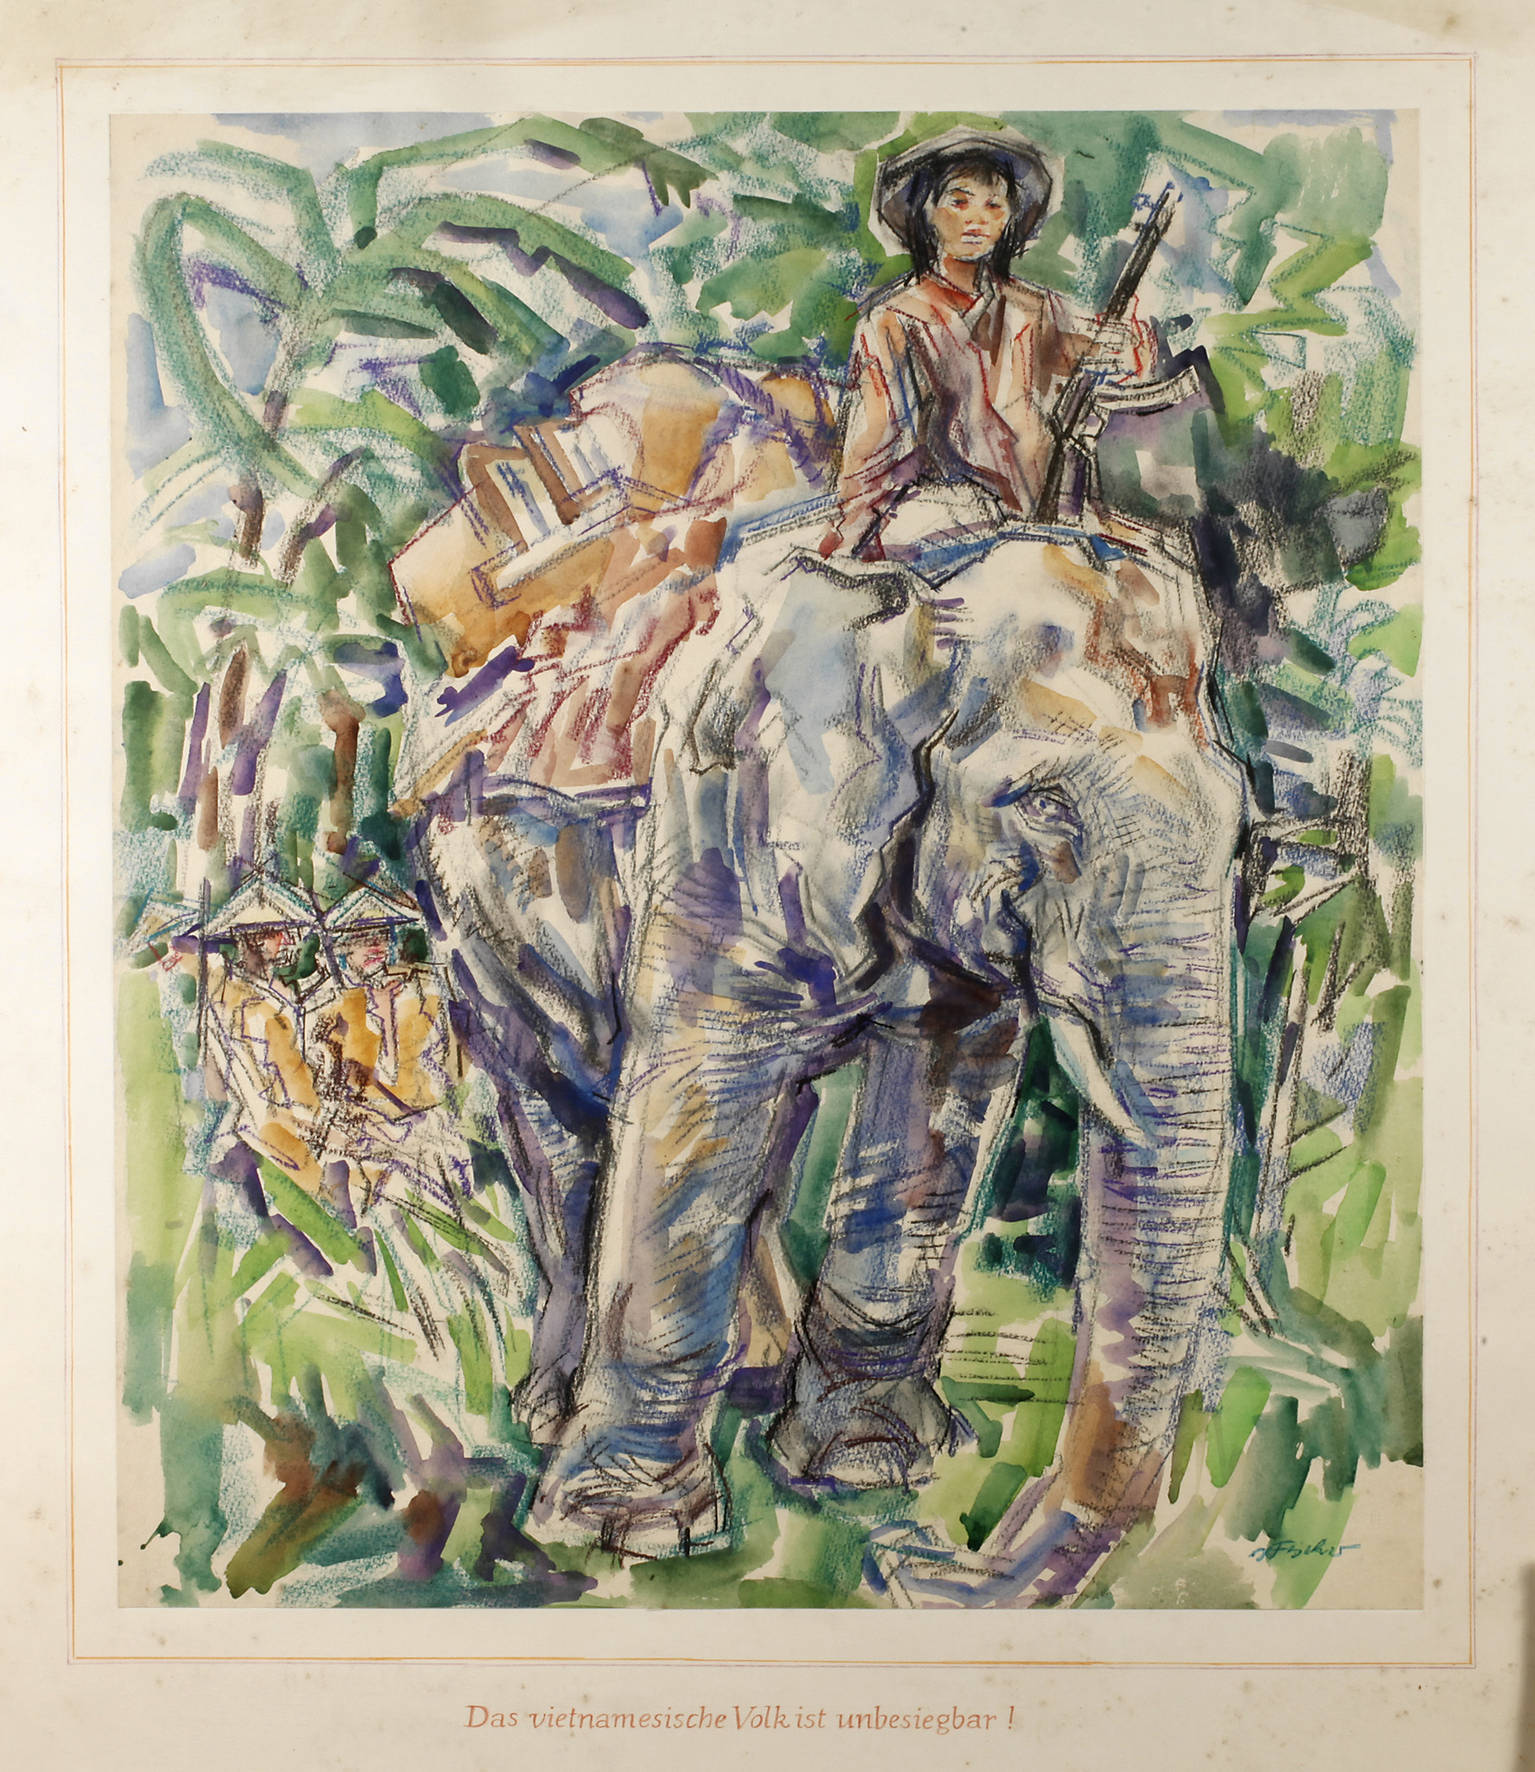 Hartwig Fischer, Vietnamesin auf Elefant